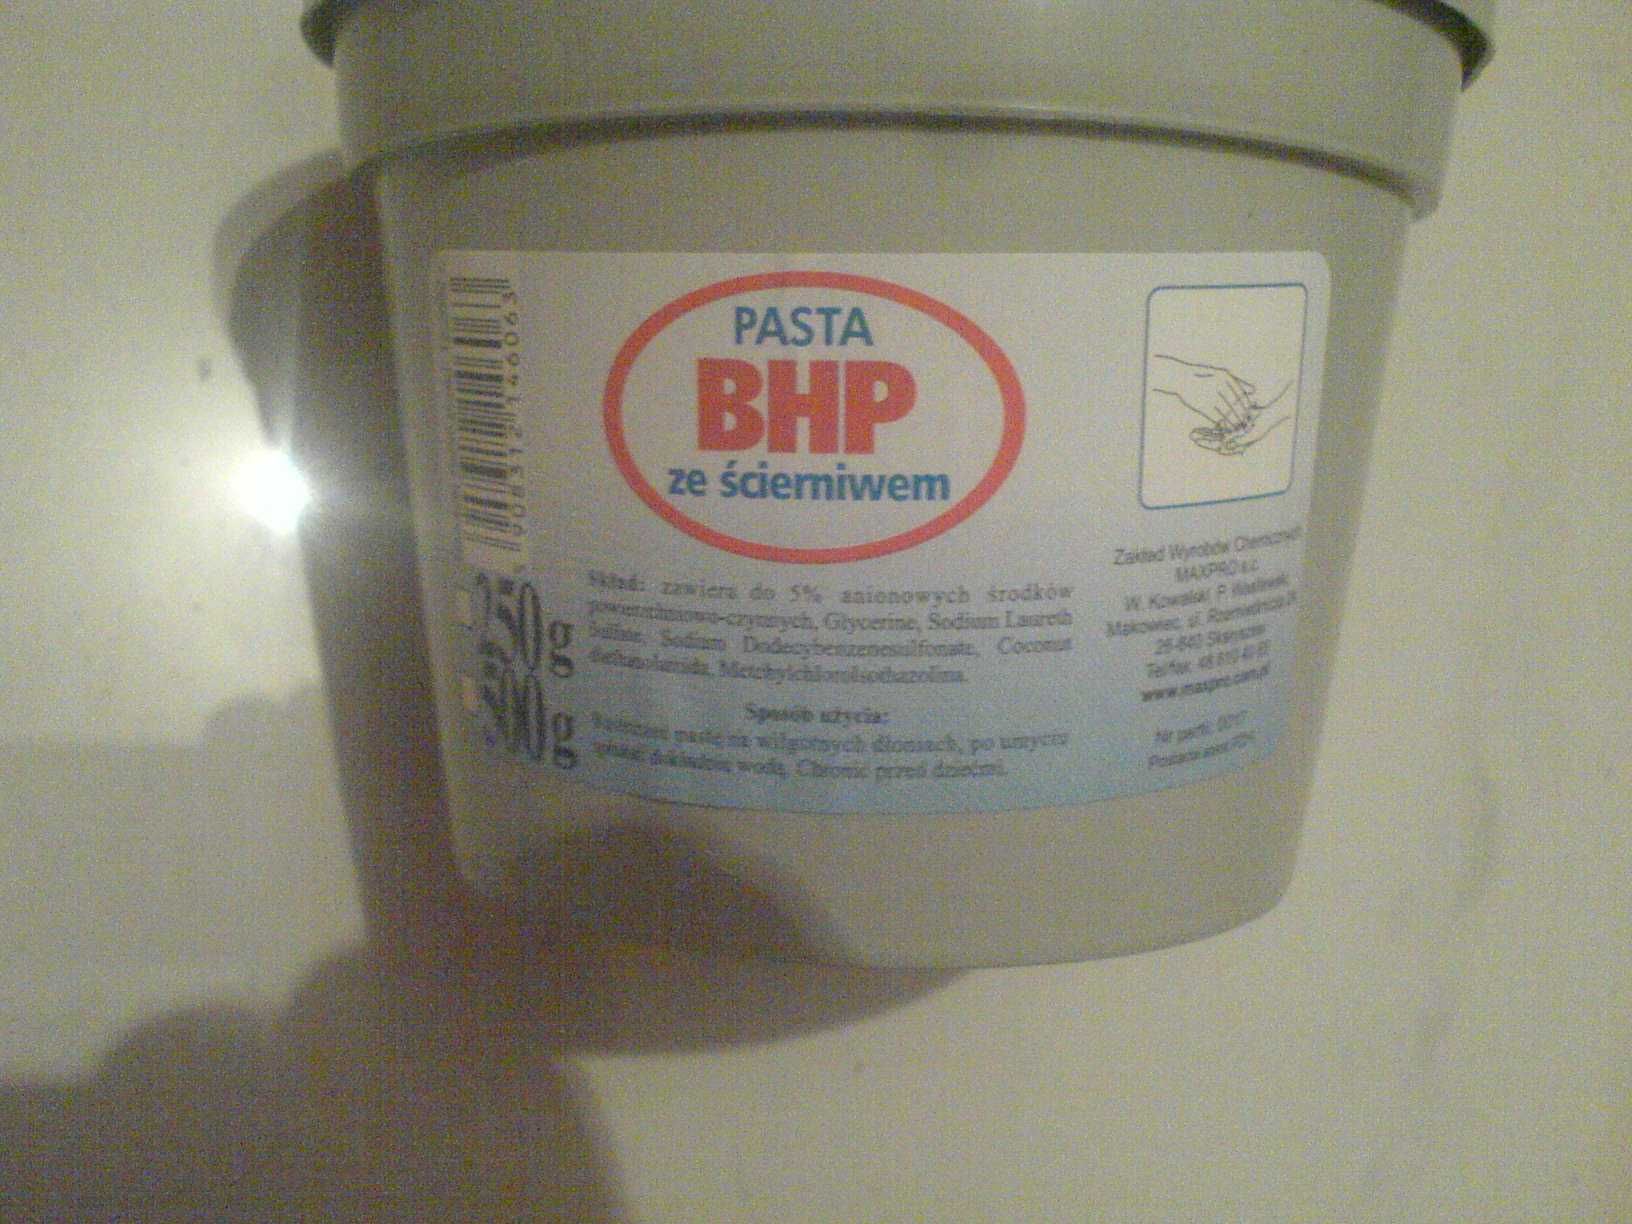 Mydło Pasta BHP ze Ścierniwem do mycia rąk 0,5 kg Producen Maxpro NOWA